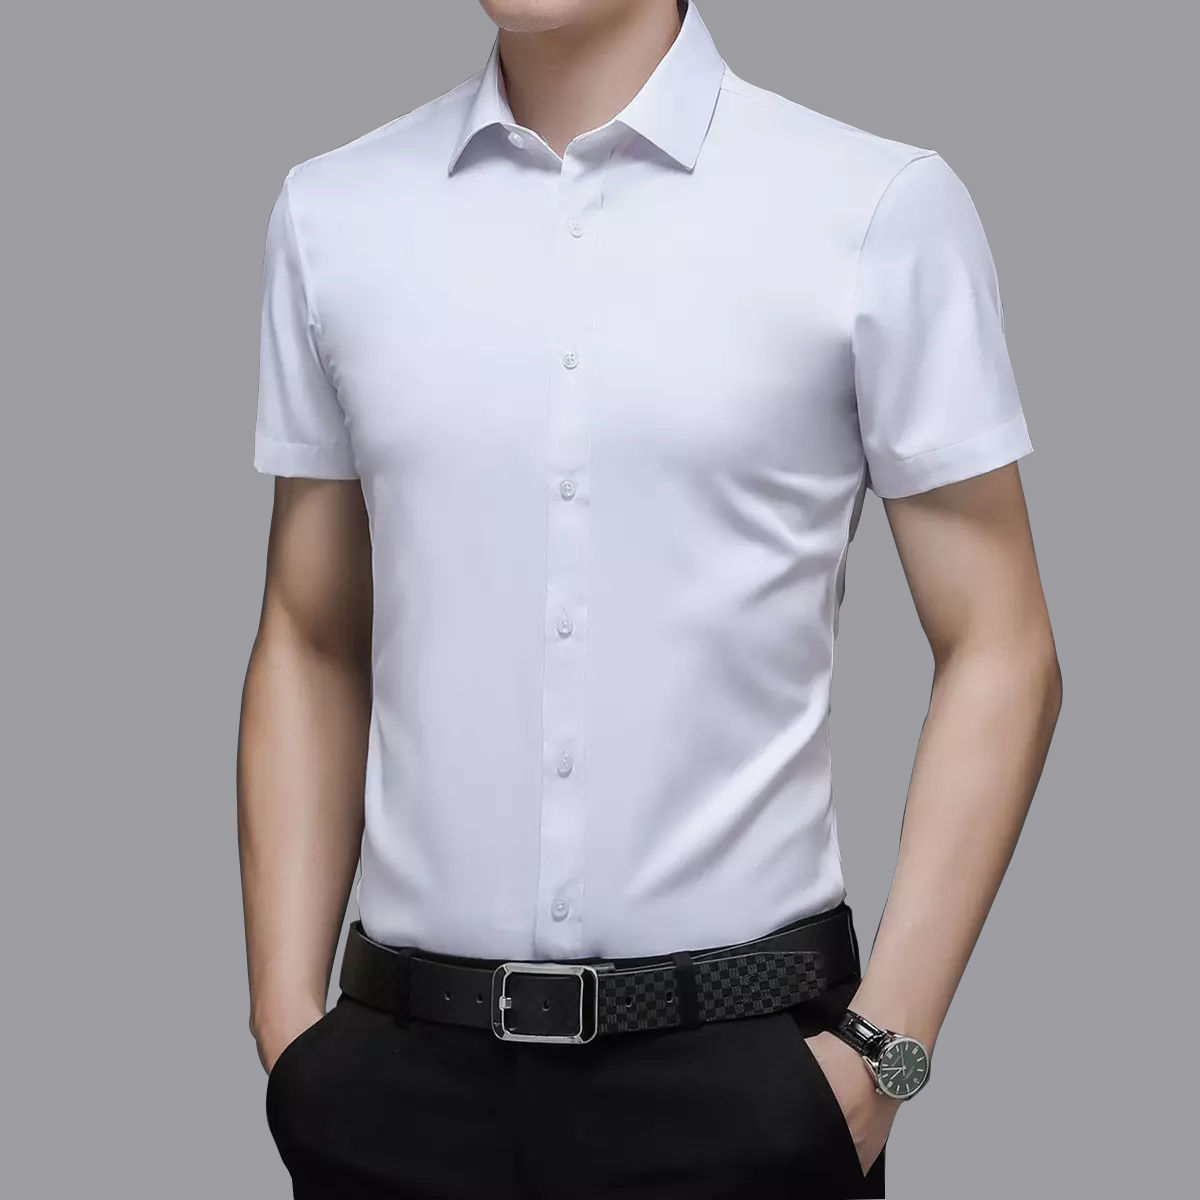 春秋季衬衫男长袖青年韩版修身短袖男商务休闲潮流大码百搭白衬衣